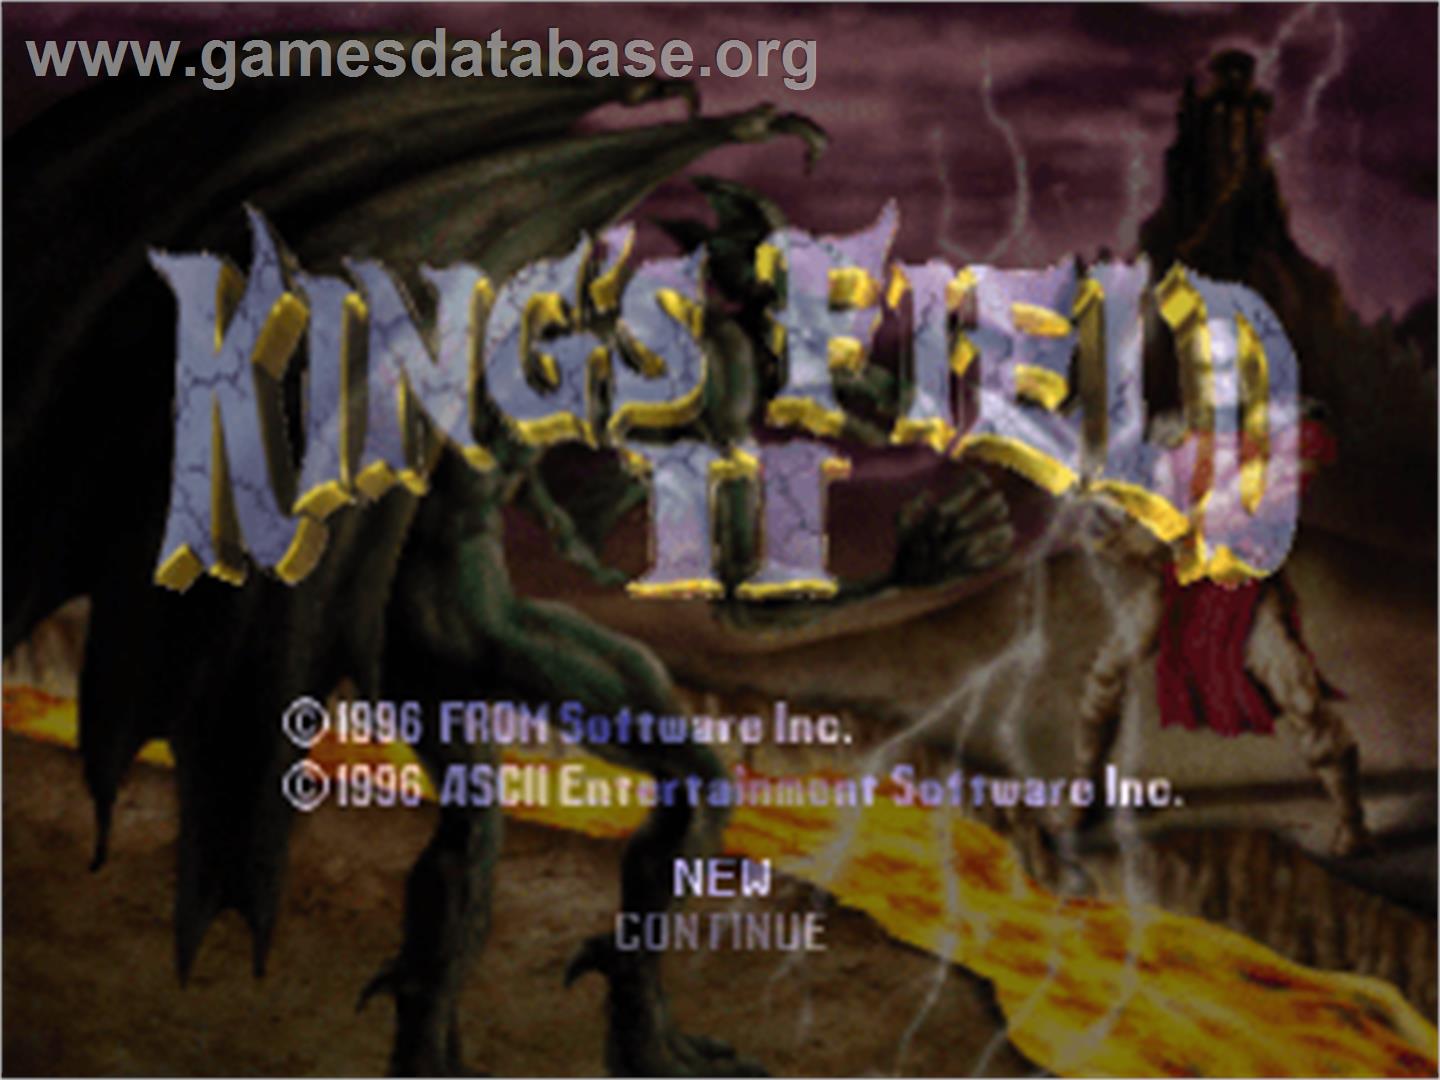 King's Field II - Sony Playstation - Artwork - Title Screen